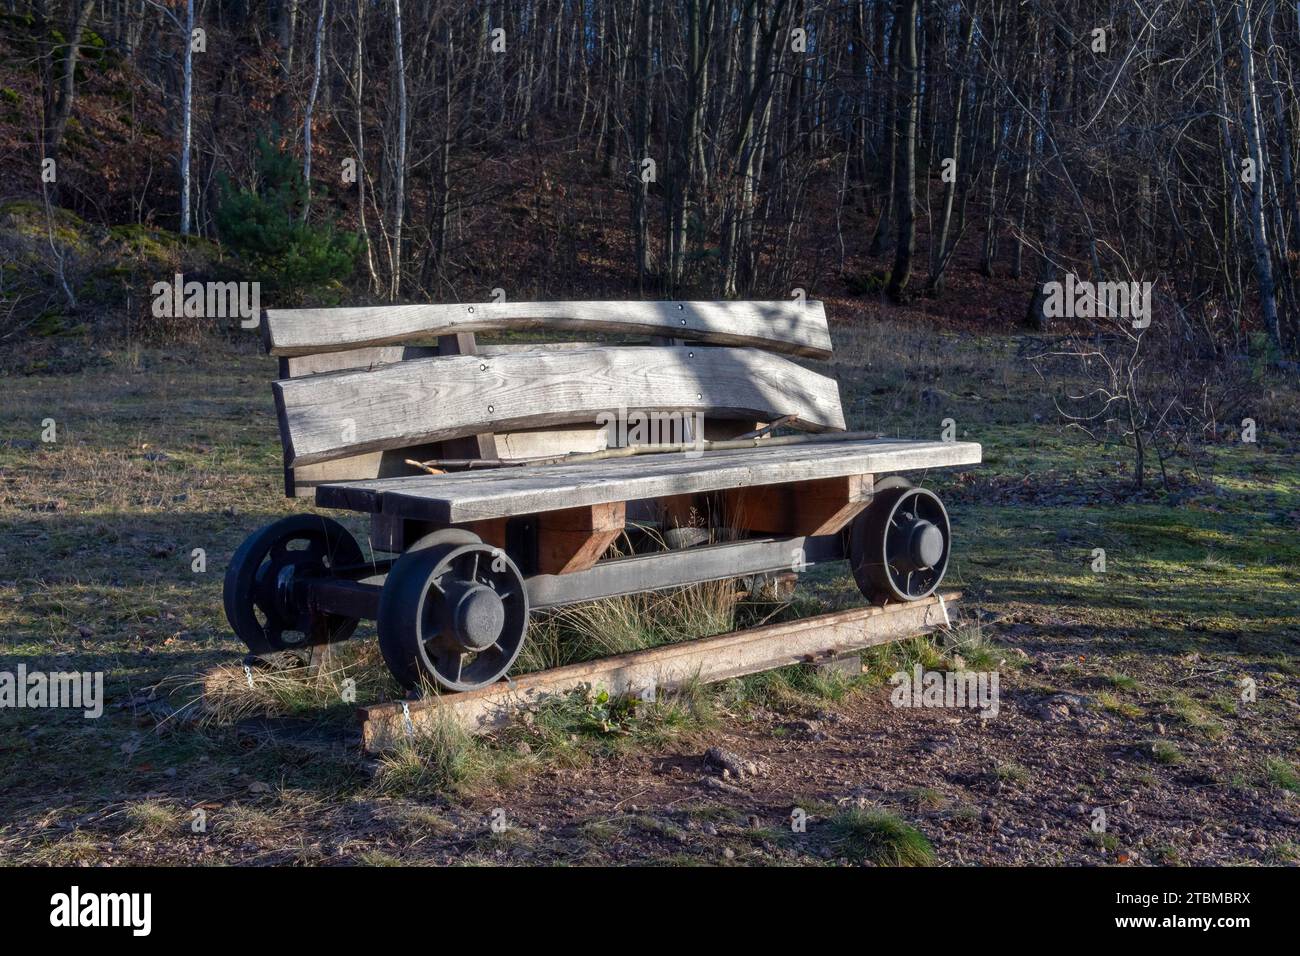 Panca in legno sulle ruote di un vecchio carrello minerario su una rotaia. Decorazioni nel parco Foto Stock